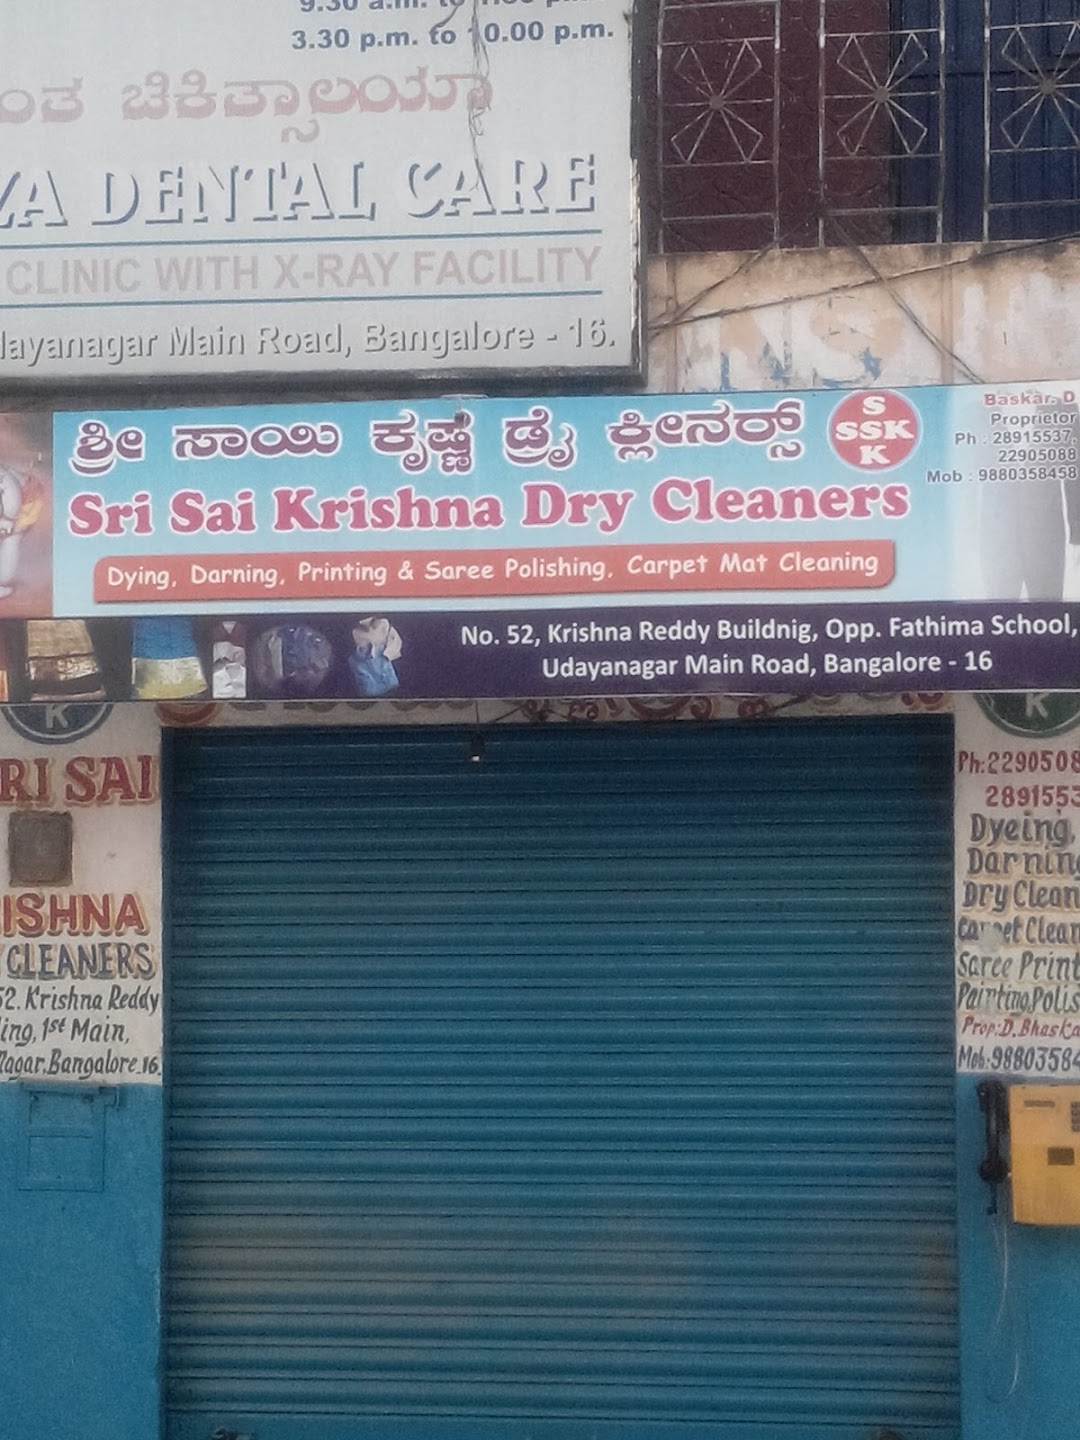 Sri Sai Krushna Dry Cleaners